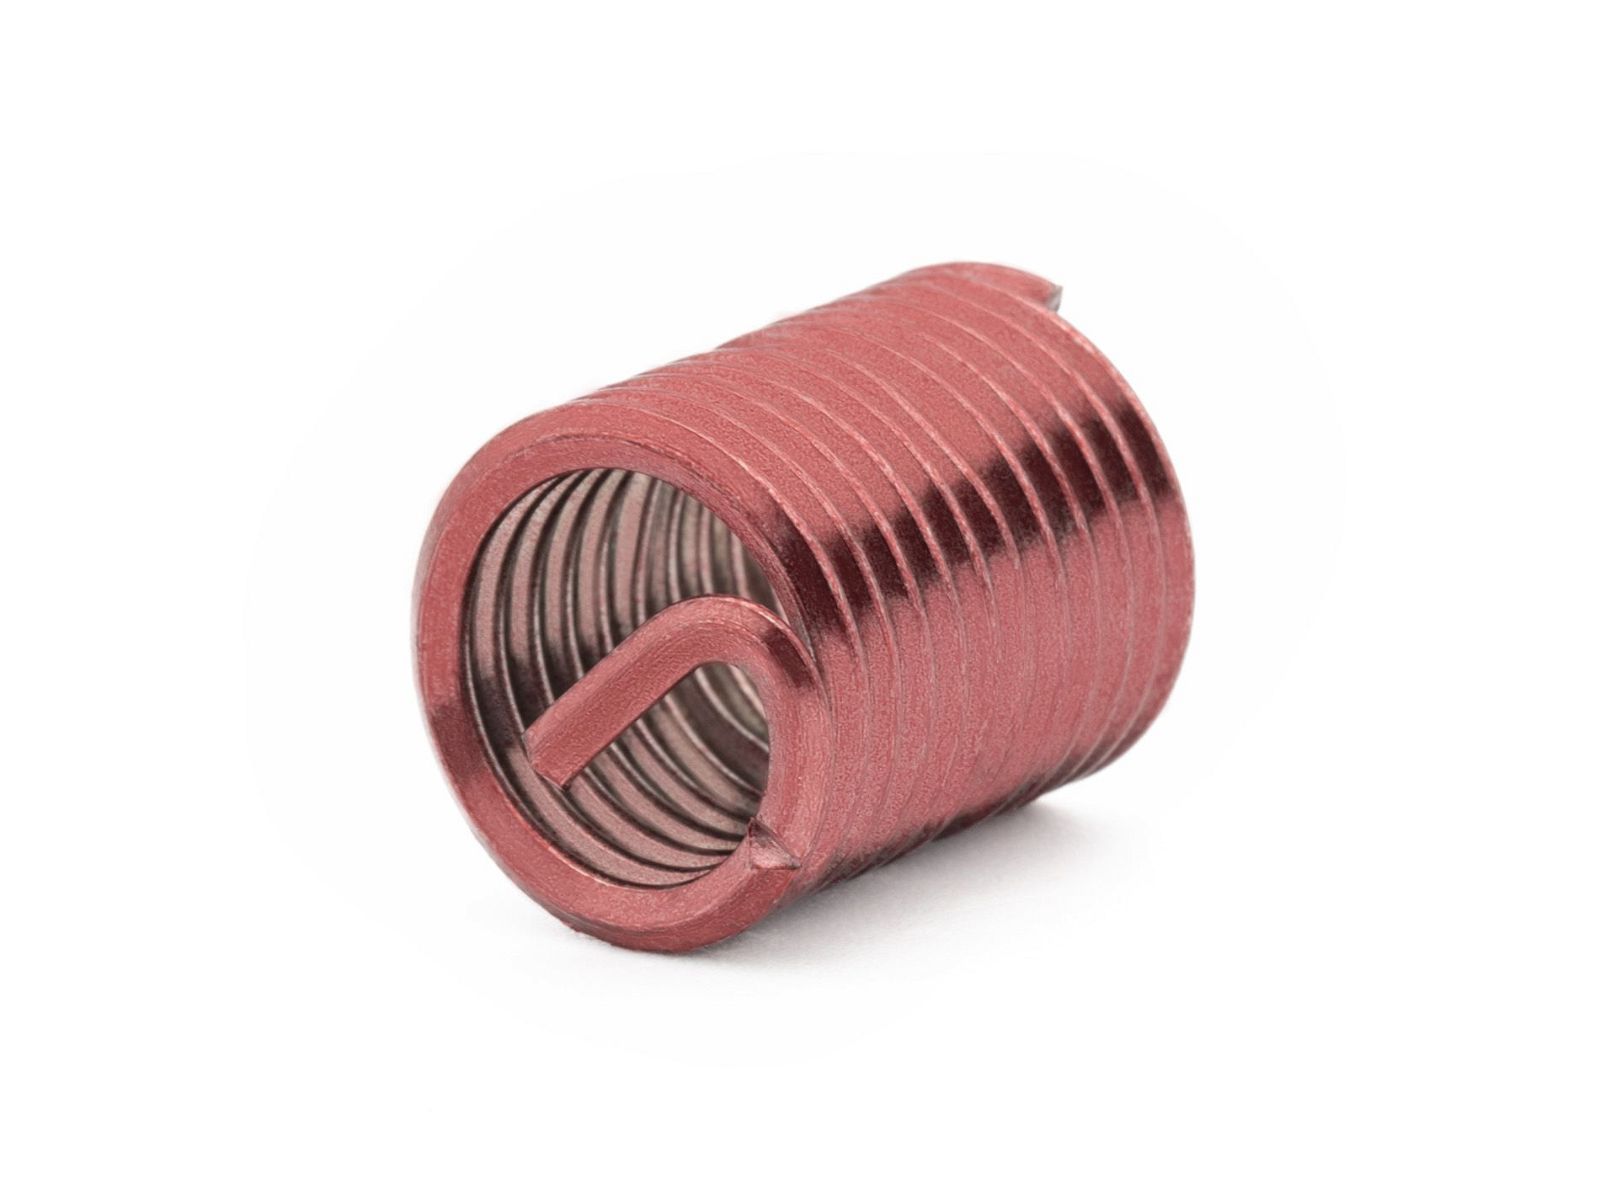 BaerCoil Wire Thread Inserts M 3 x 0.5 - 2.0 D (6 mm) - screw grip (screw locking) - 100 pcs.